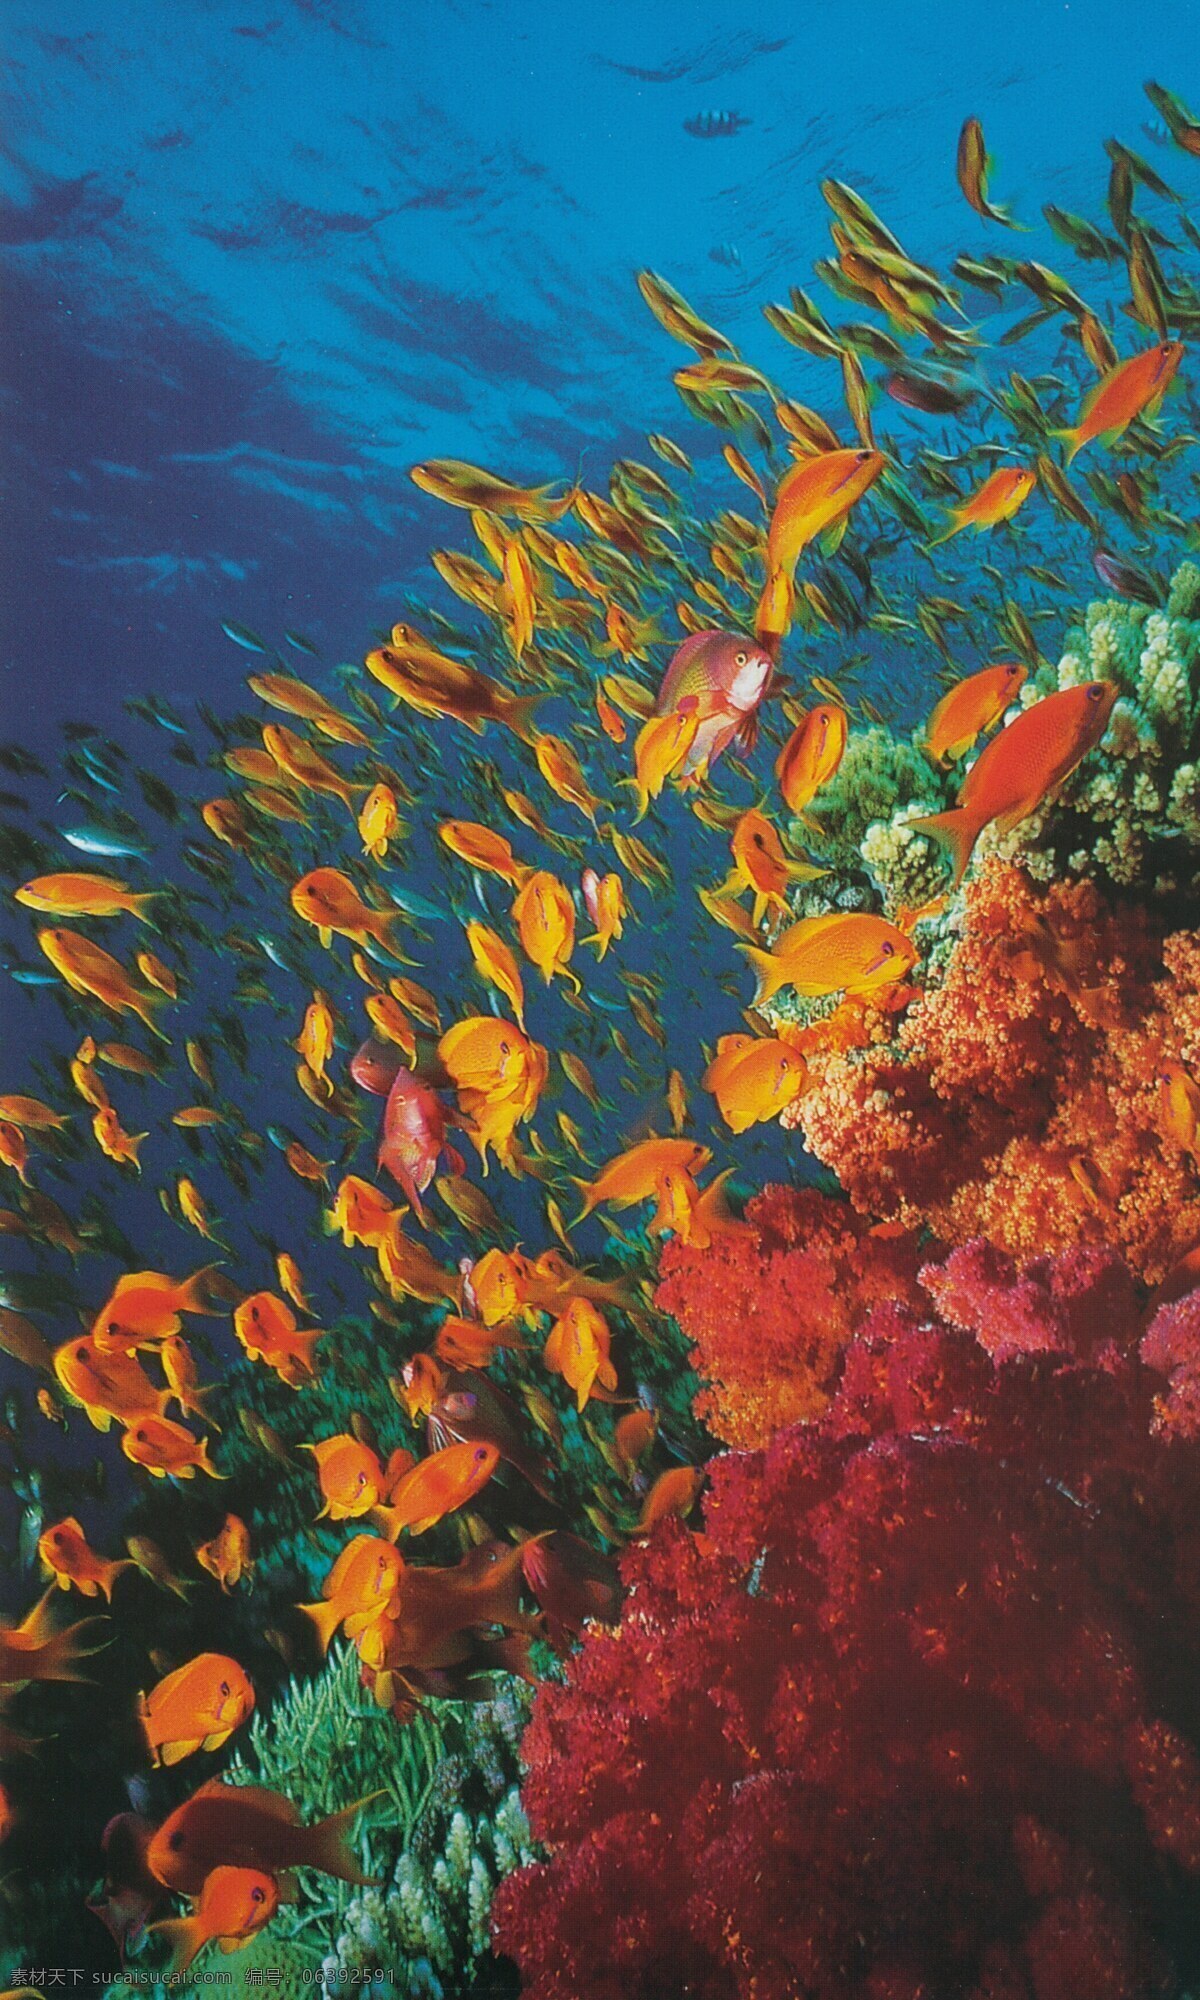 海底免费下载 碧海 大海 广告 大 辞典 海底 海水 海藻 礁石 珊瑚 深海 神秘 鱼群 生物 生物世界